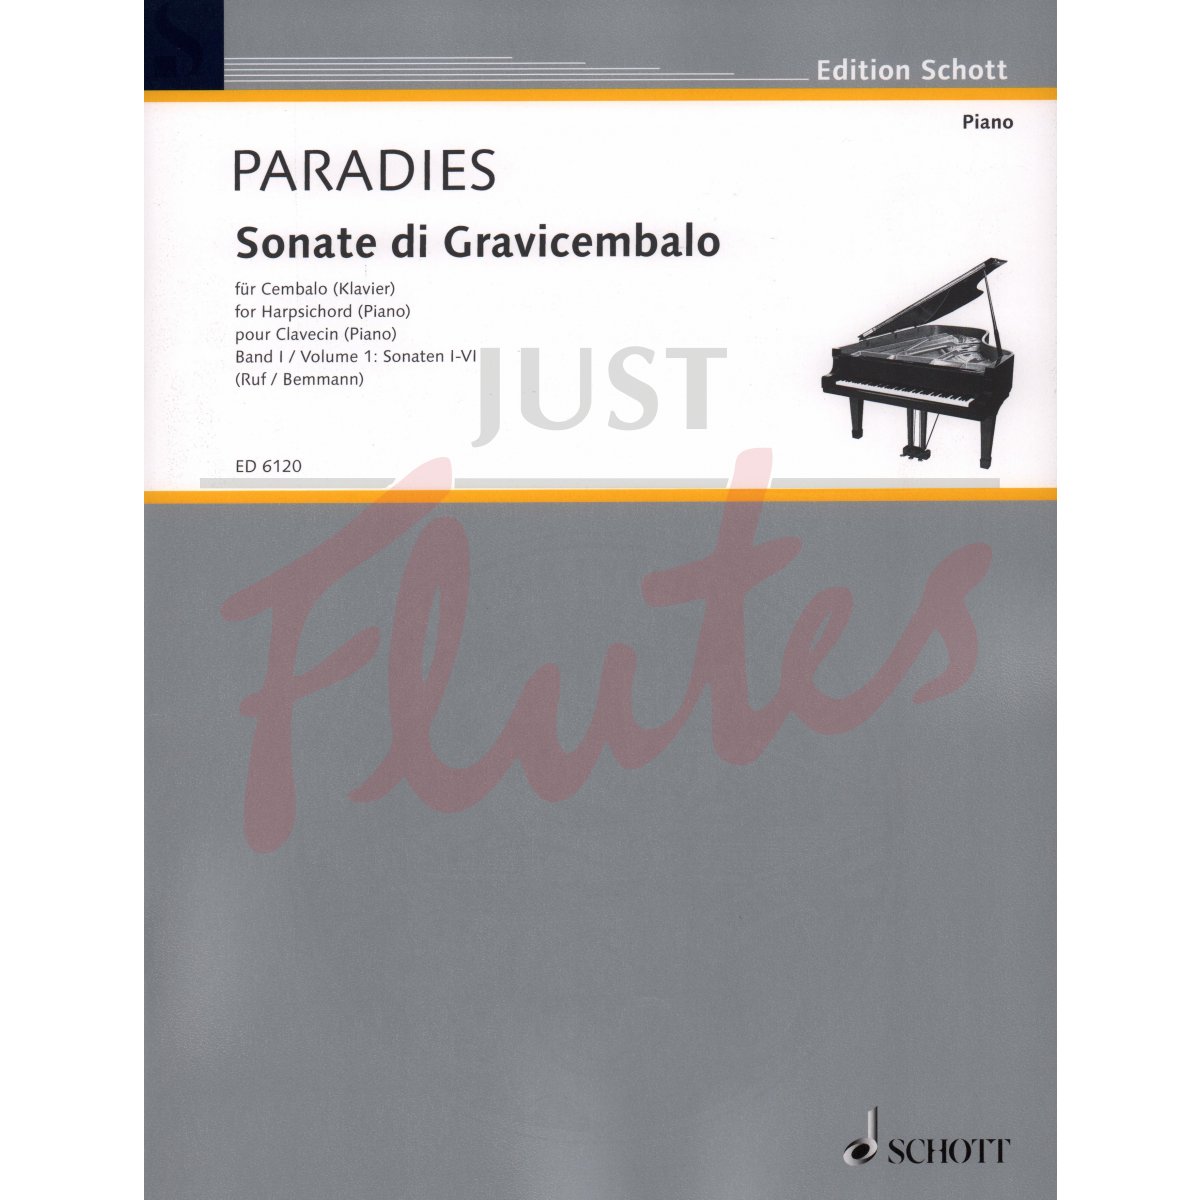 Sonatas for Harpsichord/Piano